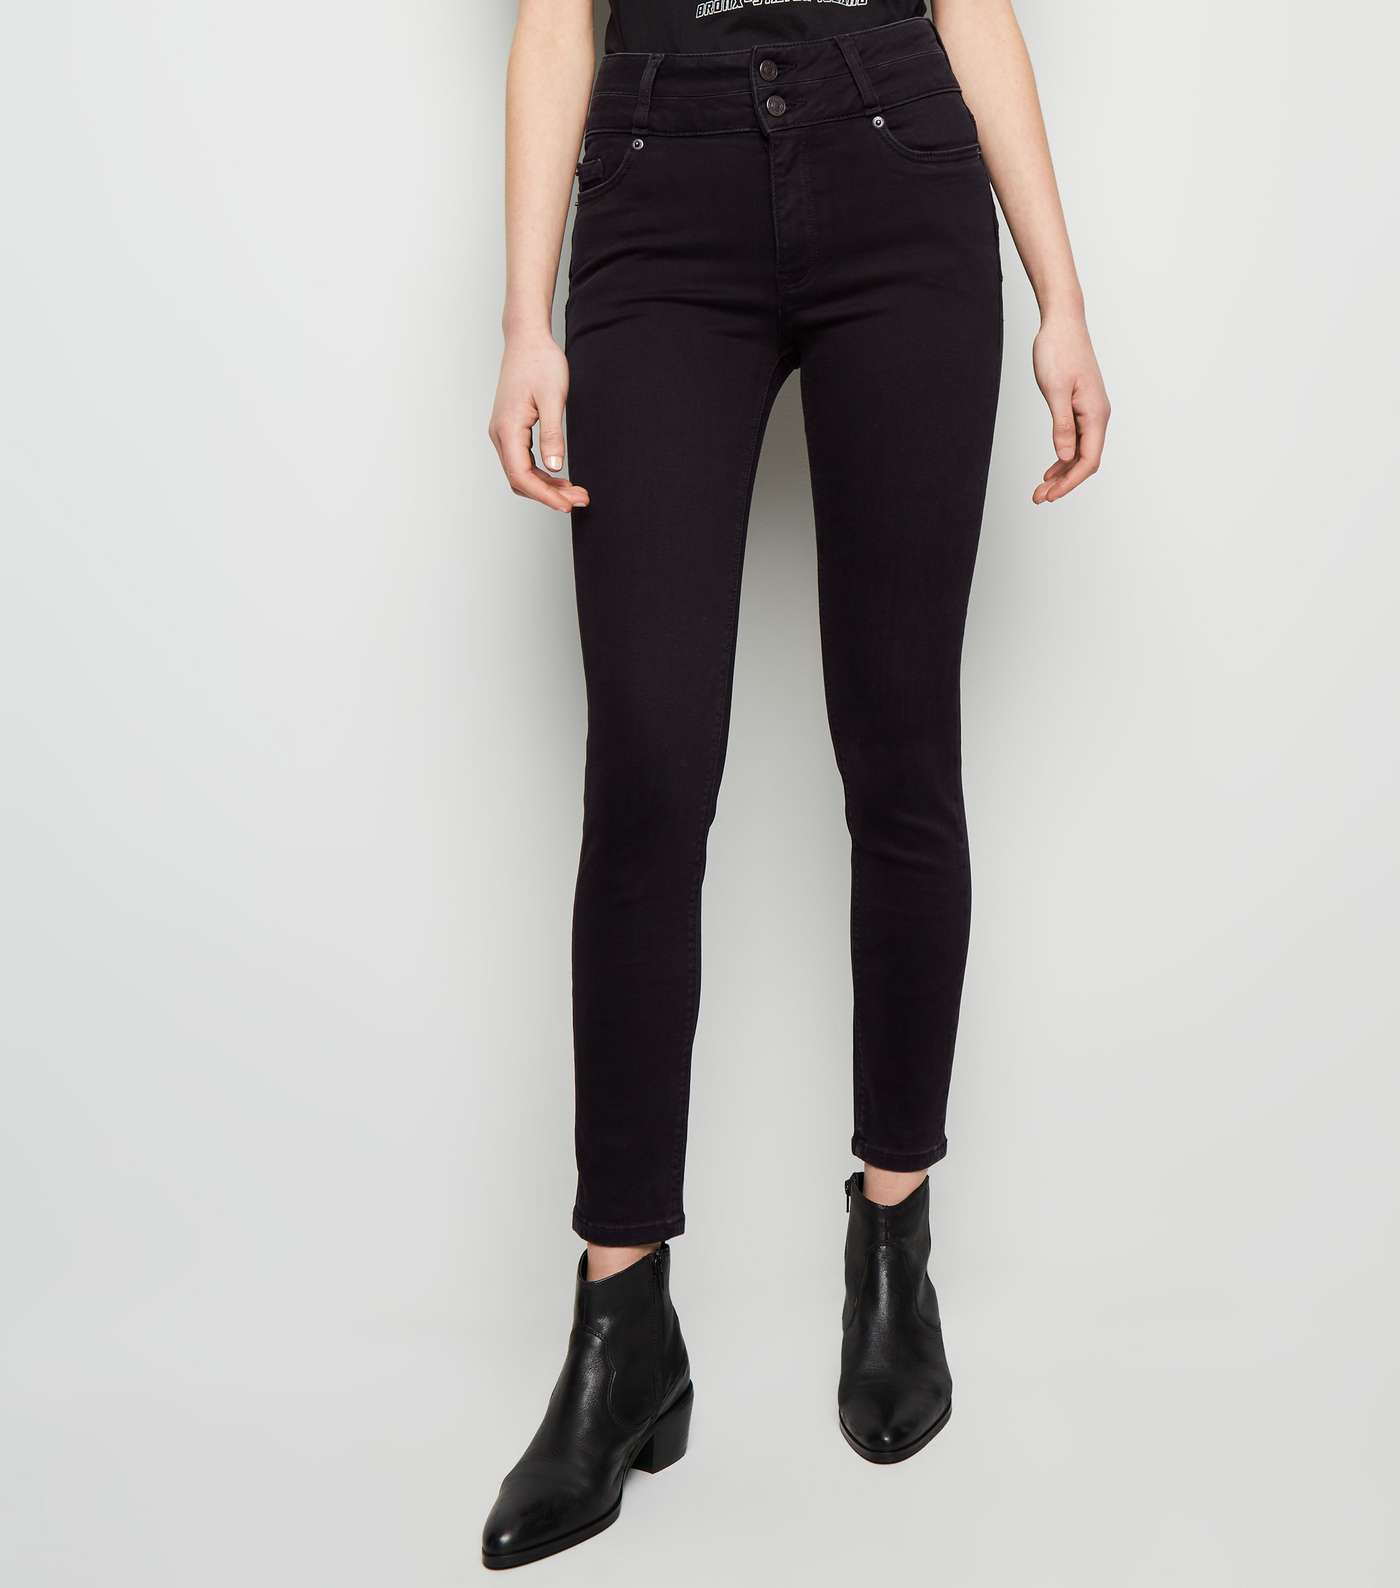 Black High Waist Skinny 'Lift & Shape' Jeans Image 2